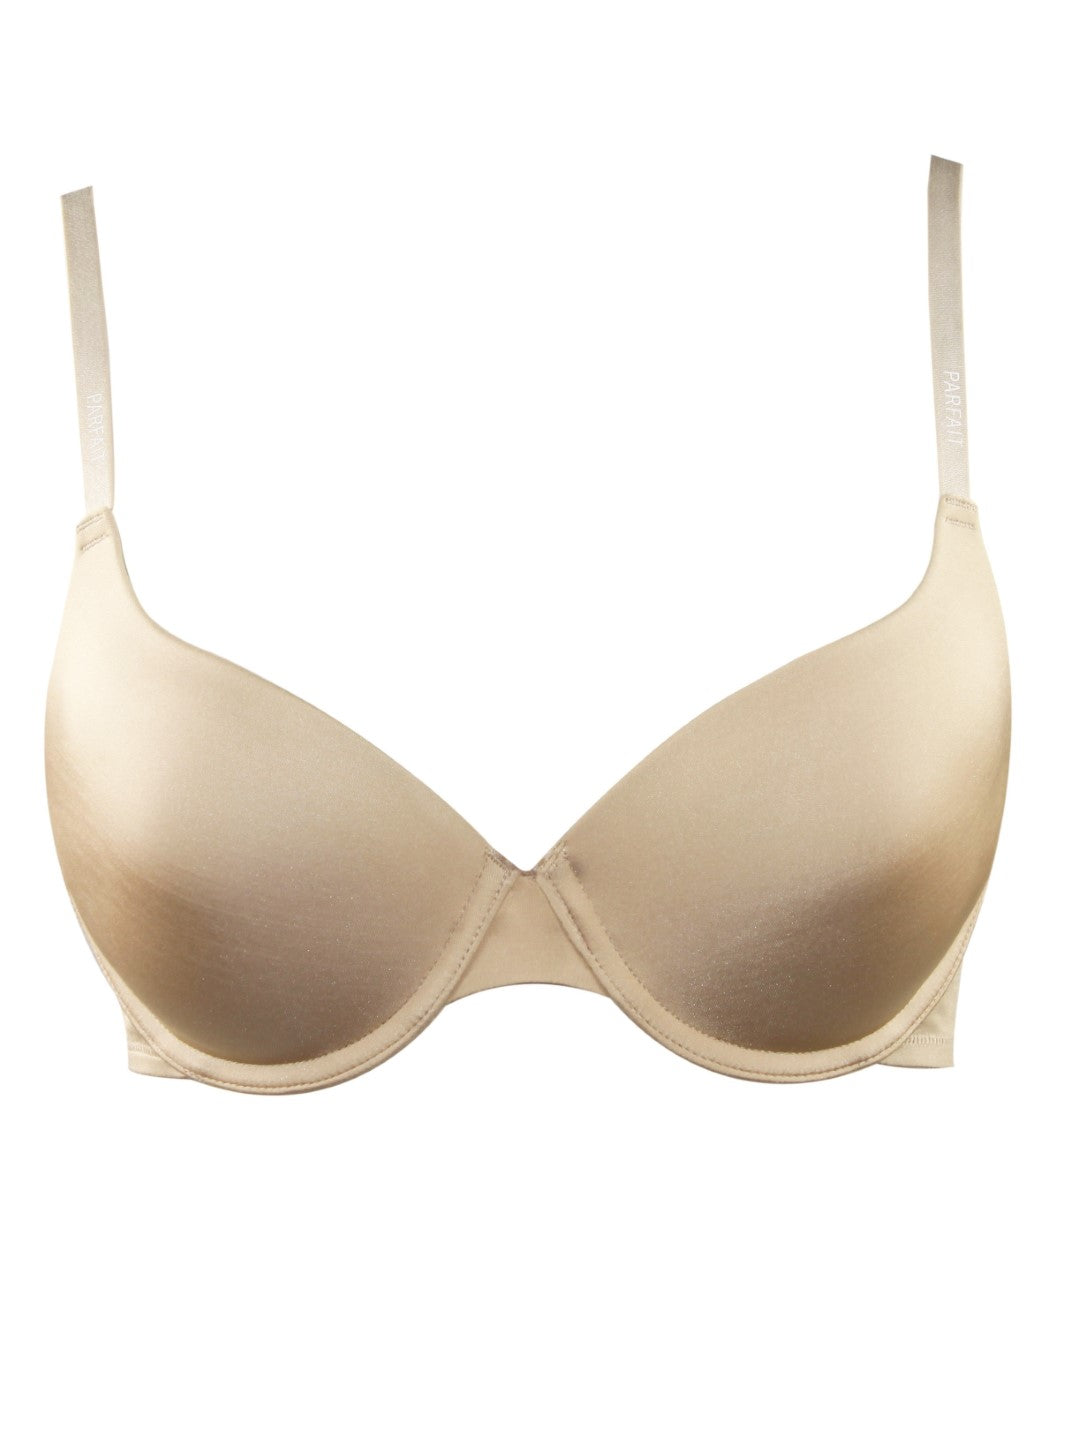 Buy T-Shirt Bra Online - European Nude - P13011 – Parfait Lingerie India